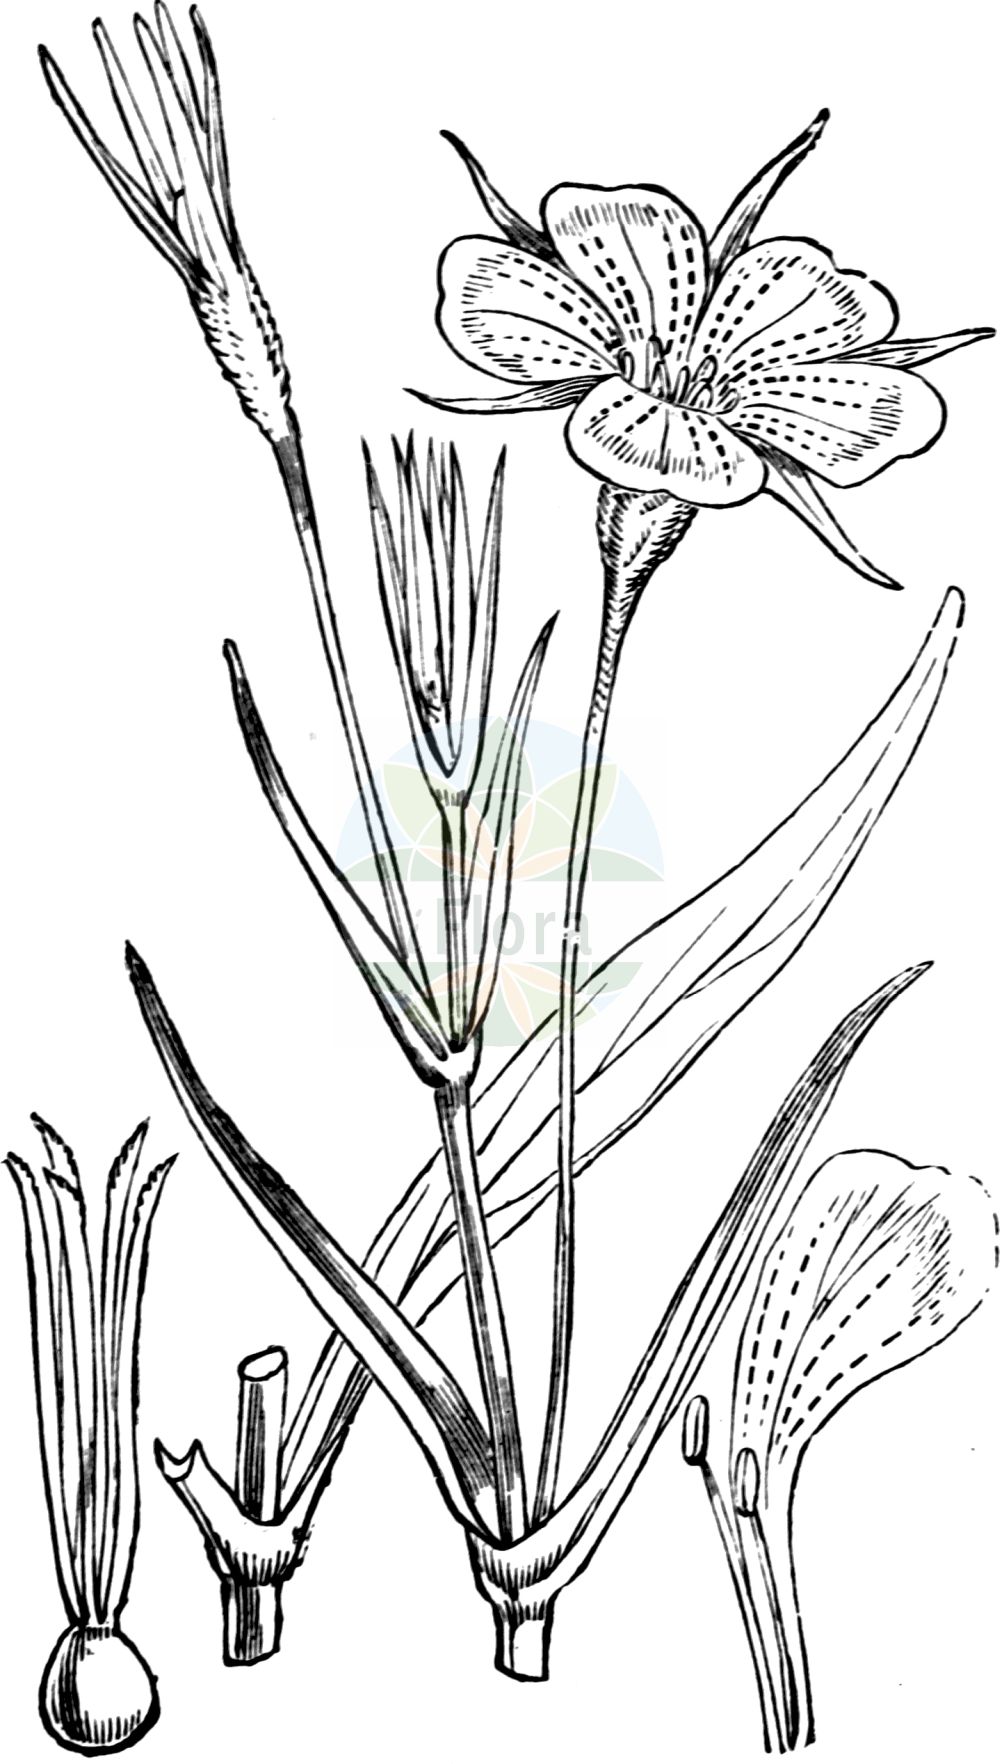 Historische Abbildung von Agrostemma githago (Gewöhnliche Kornrade - Corncockle). Das Bild zeigt Blatt, Bluete, Frucht und Same. ---- Historical Drawing of Agrostemma githago (Gewöhnliche Kornrade - Corncockle). The image is showing leaf, flower, fruit and seed.(Agrostemma githago,Gewöhnliche Kornrade,Corncockle,Agrostemma githago,Agrostemma linicola,Agrostemma nicaeense,Lychnis githago,Gewoehnliche Kornrade,Corncockle,Common Corn Cockle,Corn Campion,Agrostemma,Kornrade,Corncockle,Caryophyllaceae,Nelkengewächse,Pink family,Blatt,Bluete,Frucht,Same,leaf,flower,fruit,seed,Fitch et al. (1880))